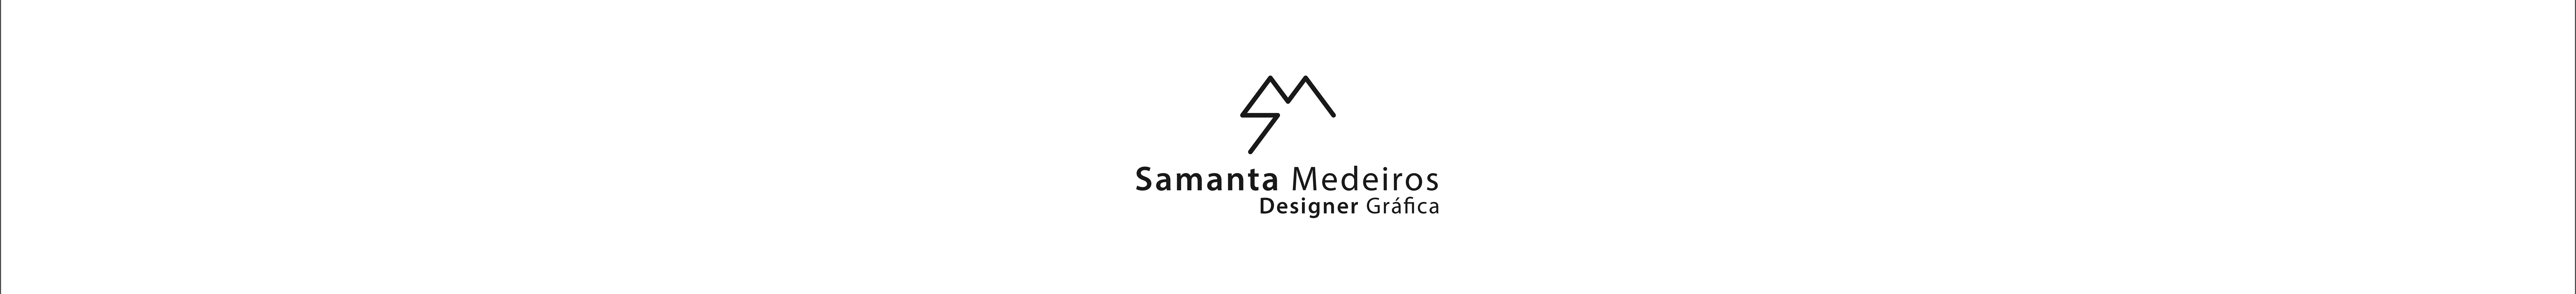 Samanta Medeiros's profile banner